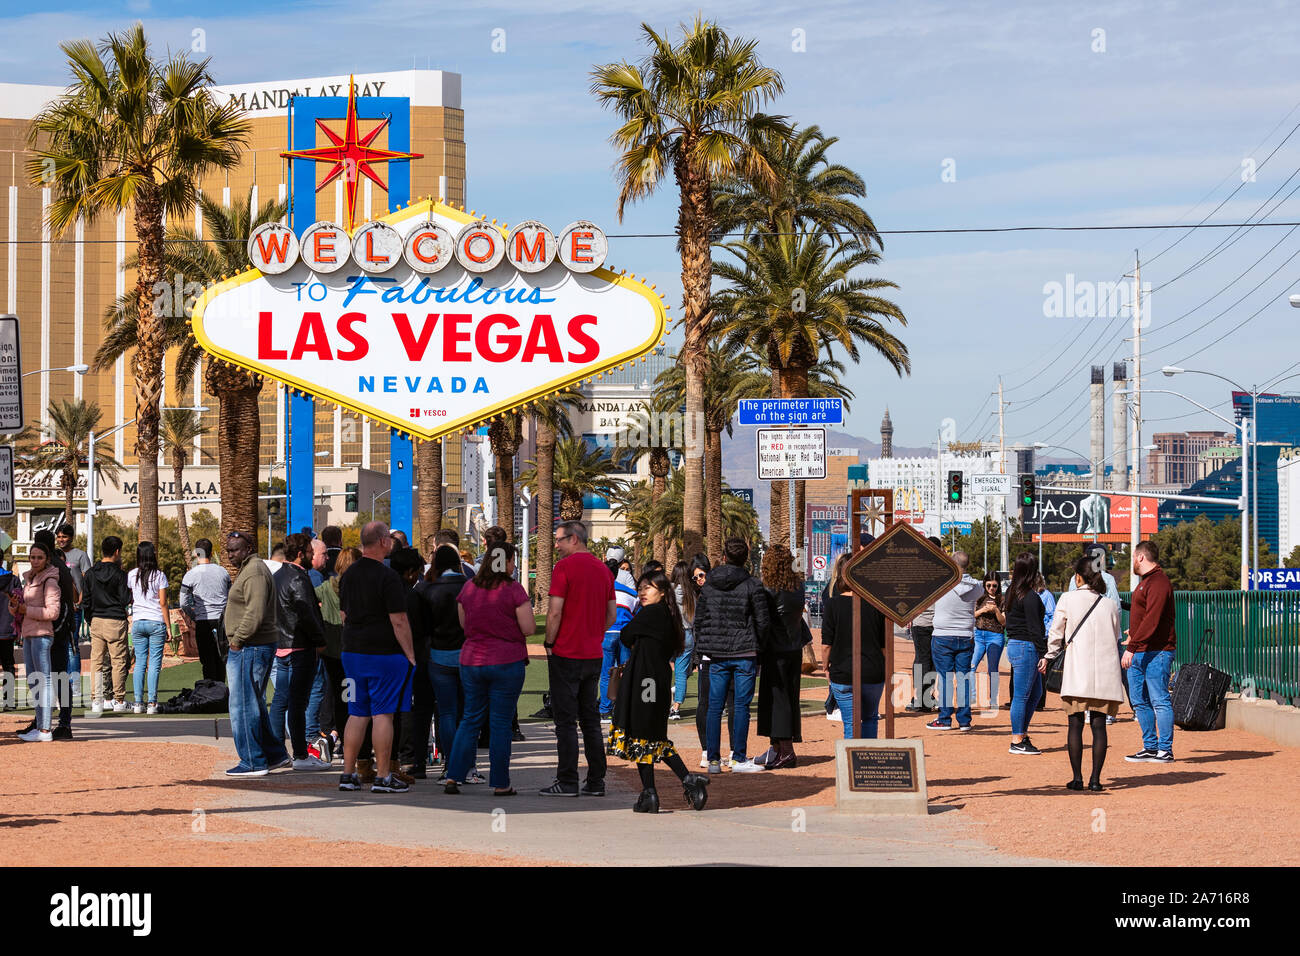 Une foule de touristes se tiennent en ligne pour des photos au panneau Bienvenue à Las Vegas fabuleux à Las Vegas, Nevada, Etats-Unis Banque D'Images